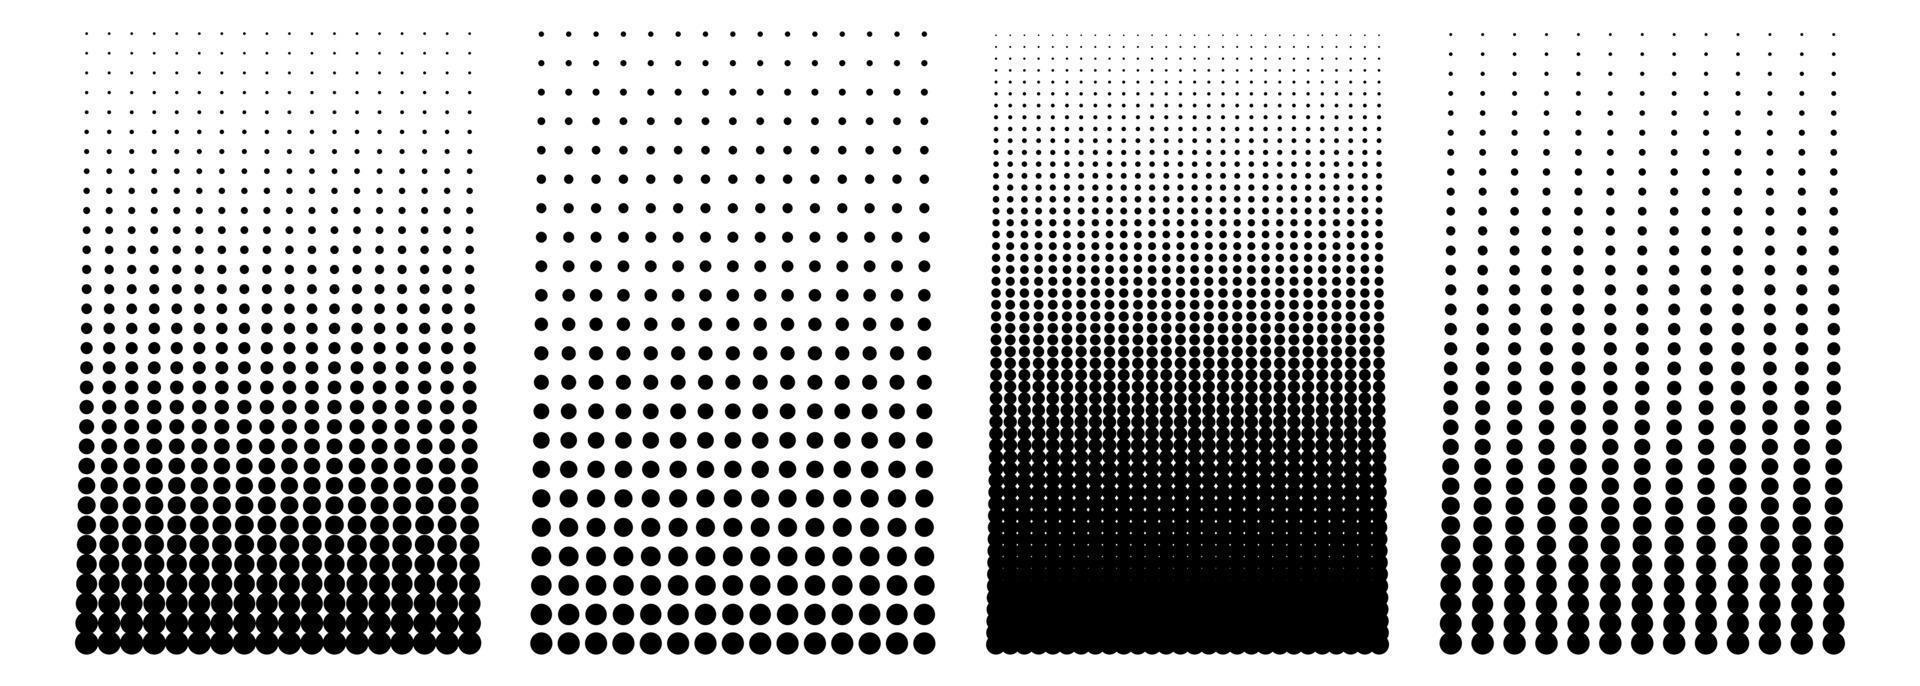 Halbtonpunktmuster. abstraktes schwarz gepunktetes mosaik, punkttextur und lochgitterhintergrund. Schwarz-Weiß-Raster. Geometrisches Halbtonmuster mit Farbverlauf. isolierte Vektorillustration. vektor